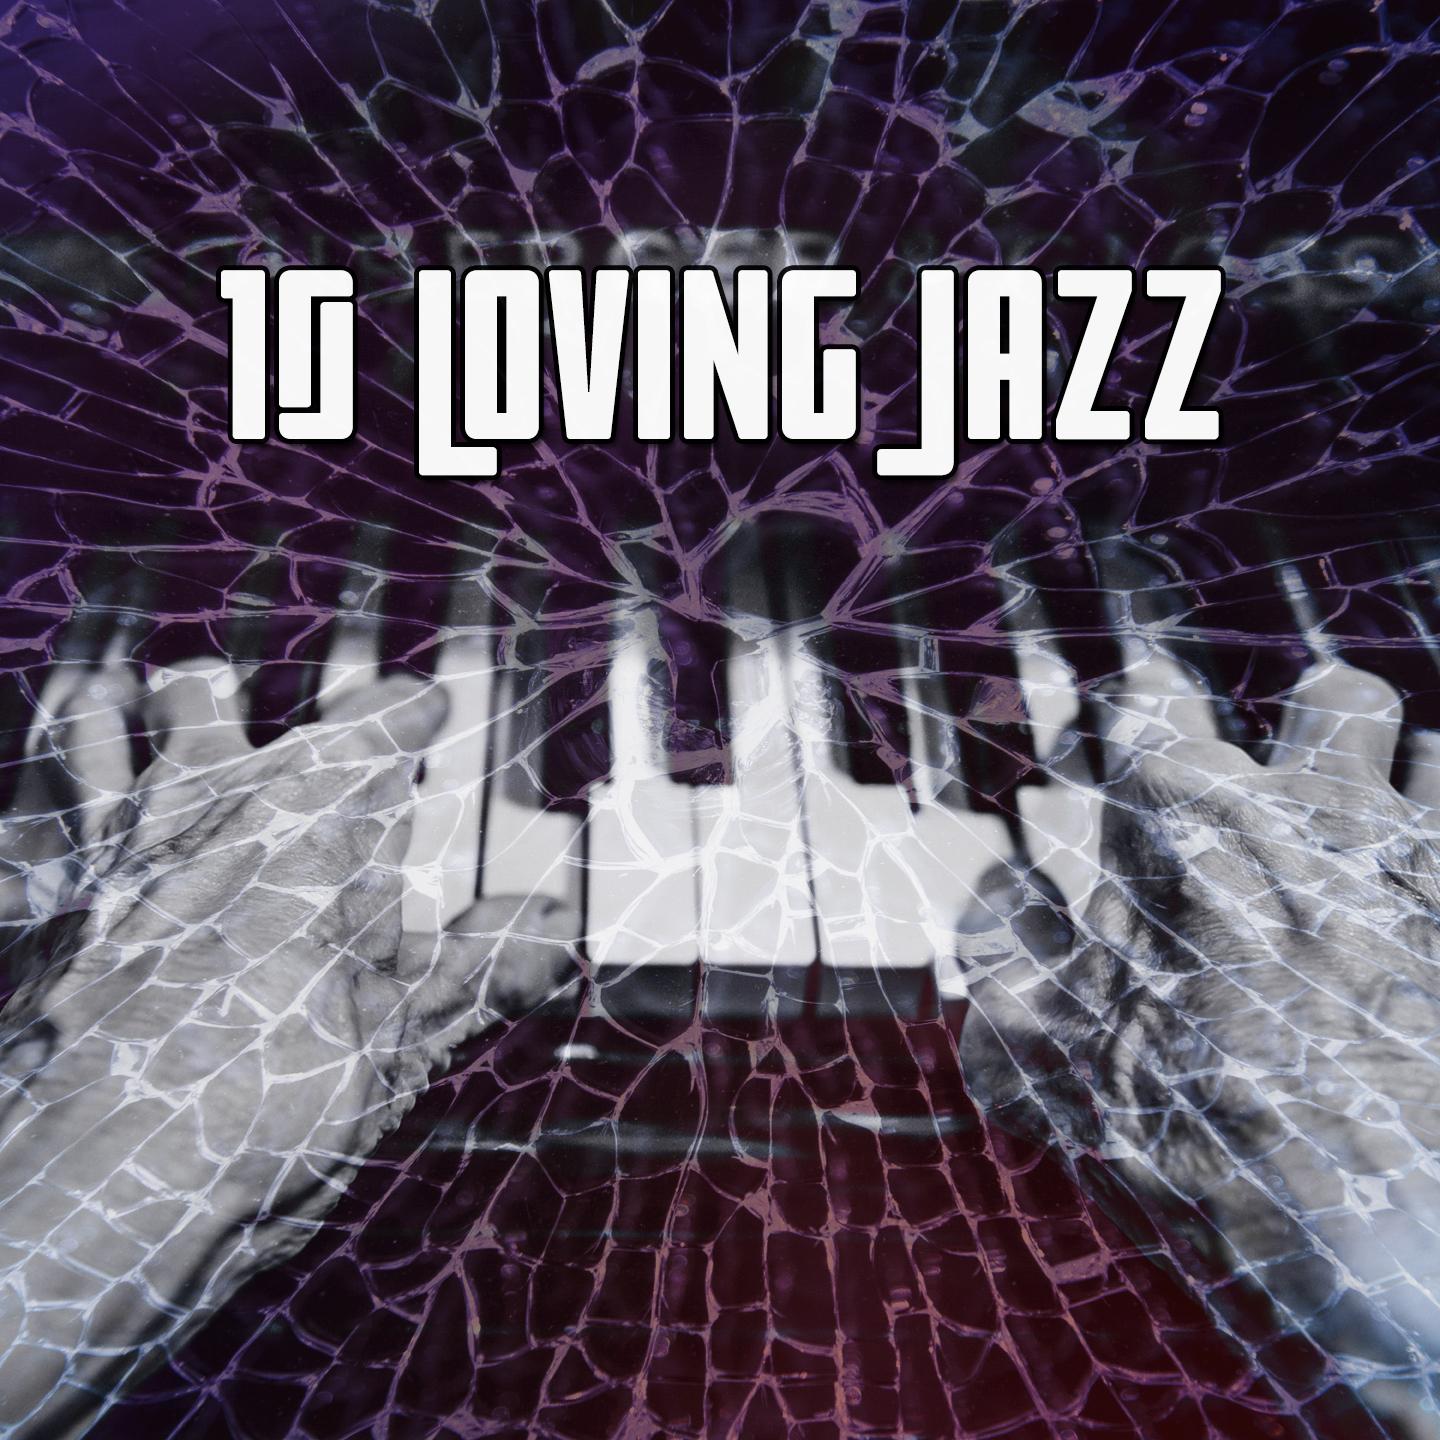 10 Loving Jazz